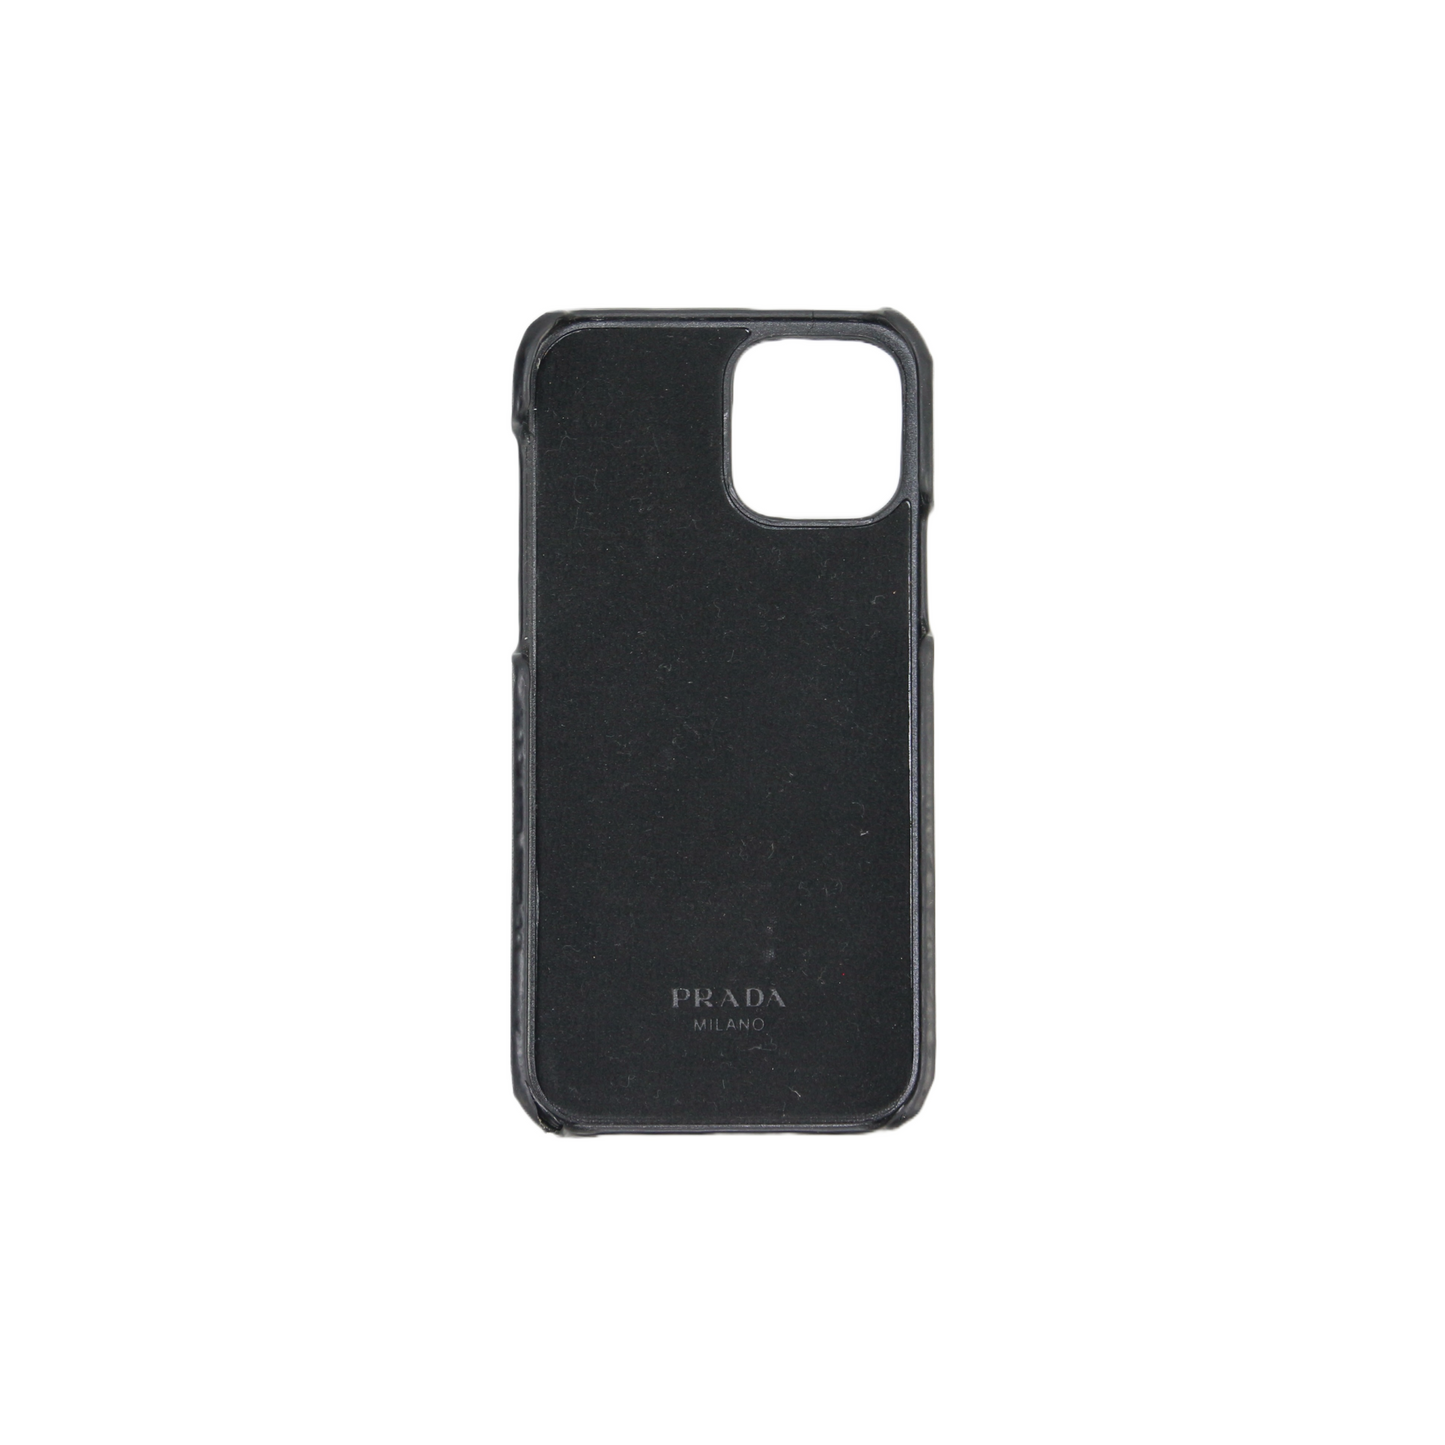 Prada Phone Case Iphone 12